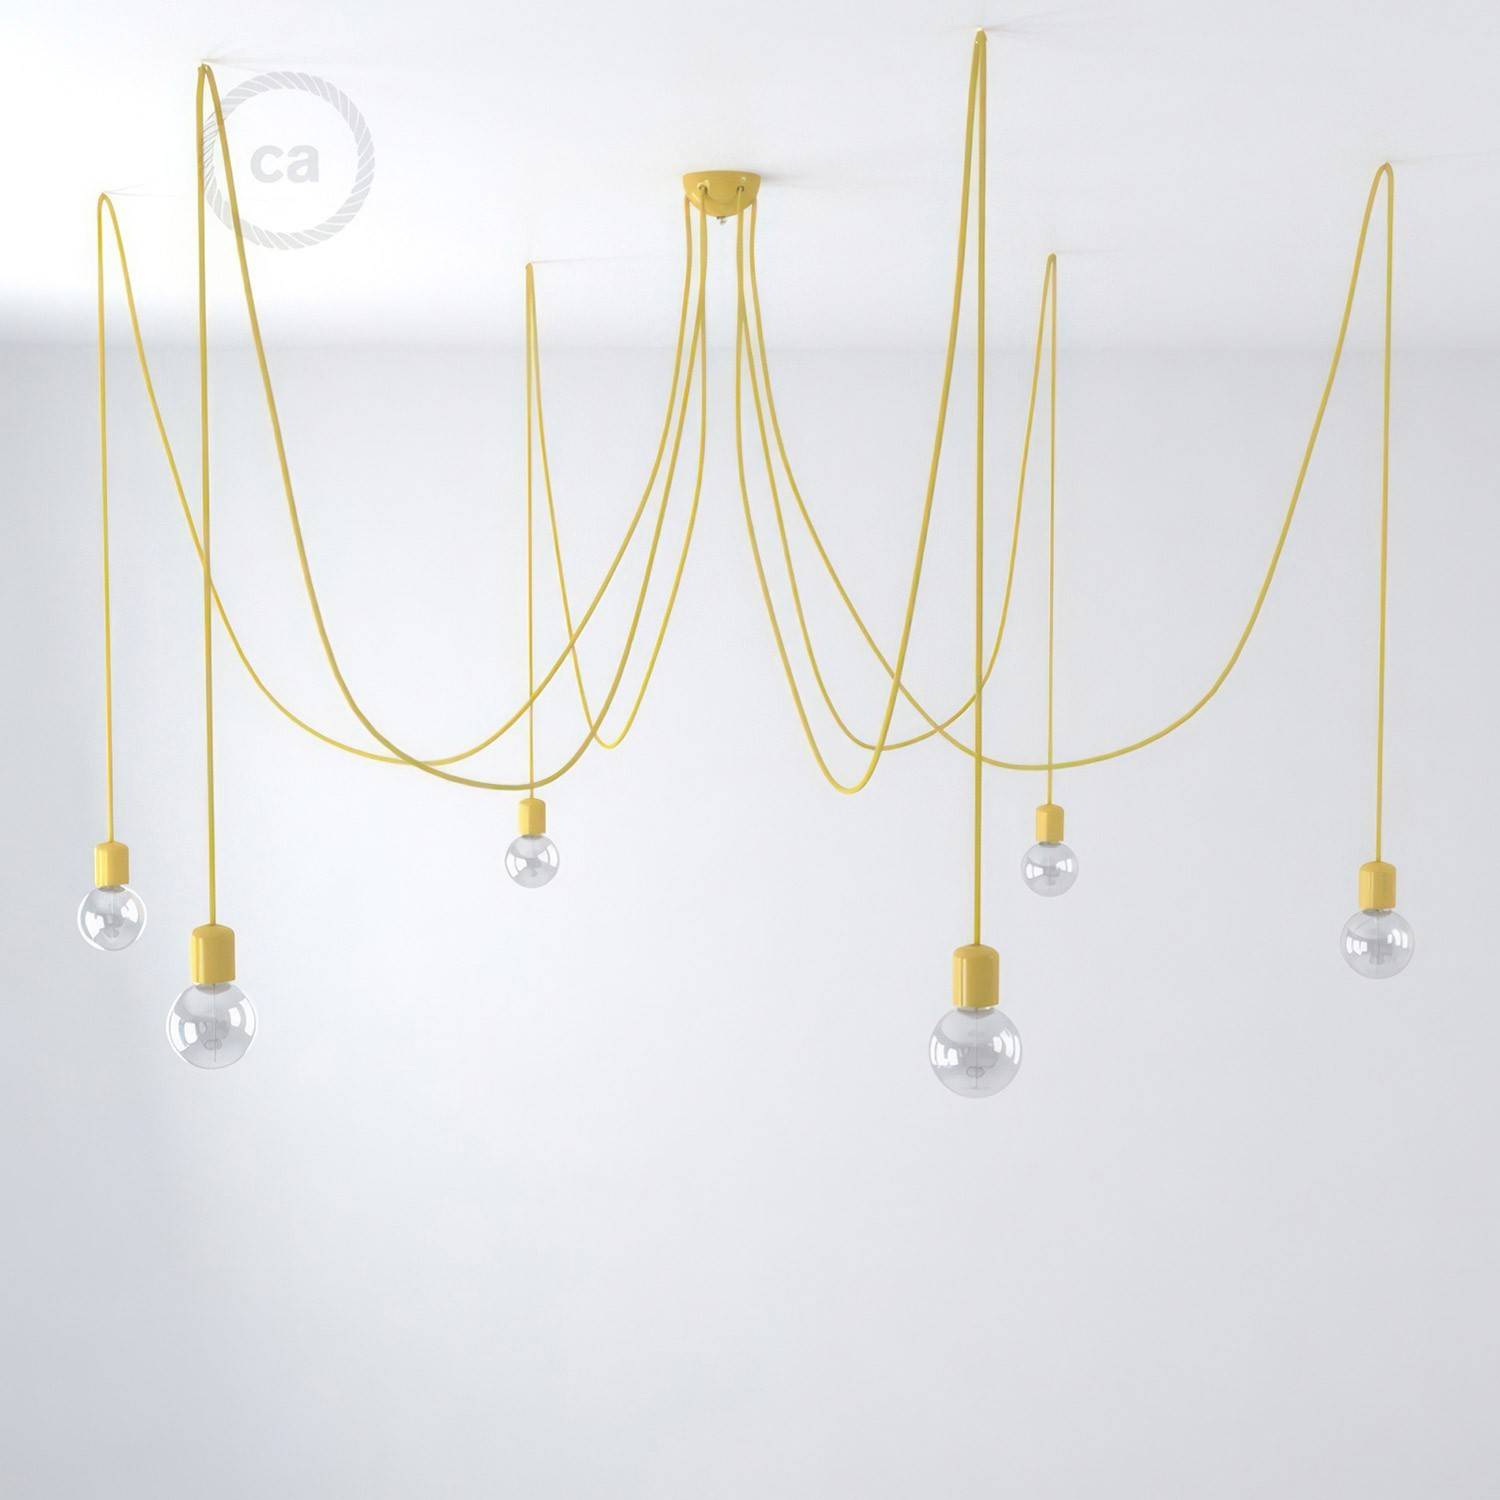 Suspensão fabricada em Itália  com 6 pêndulos dotados de lâmpadas, cabo de tecido e acabamentos em cerâmica colorida